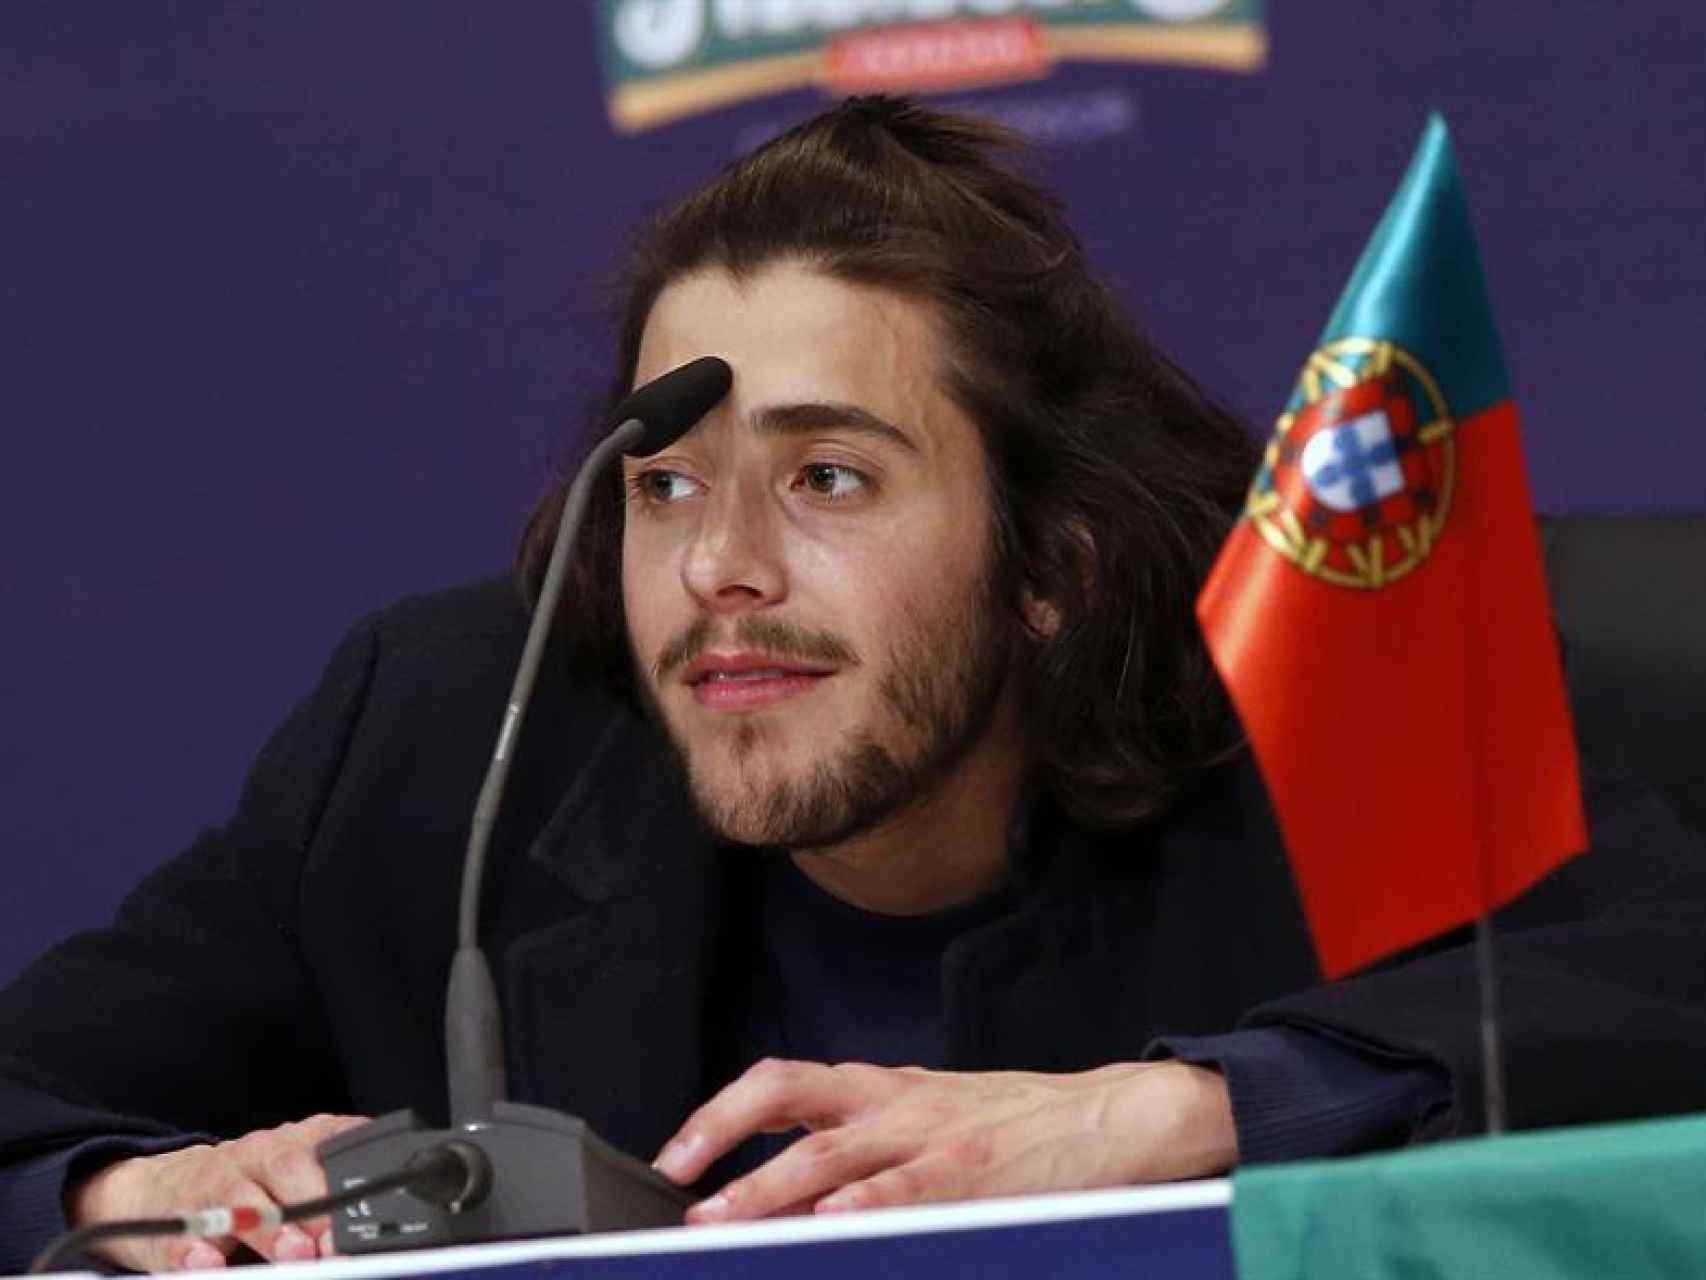 Salvador Sobral en la rueda de prensa tras ganar el espectáculo eurovisivo.